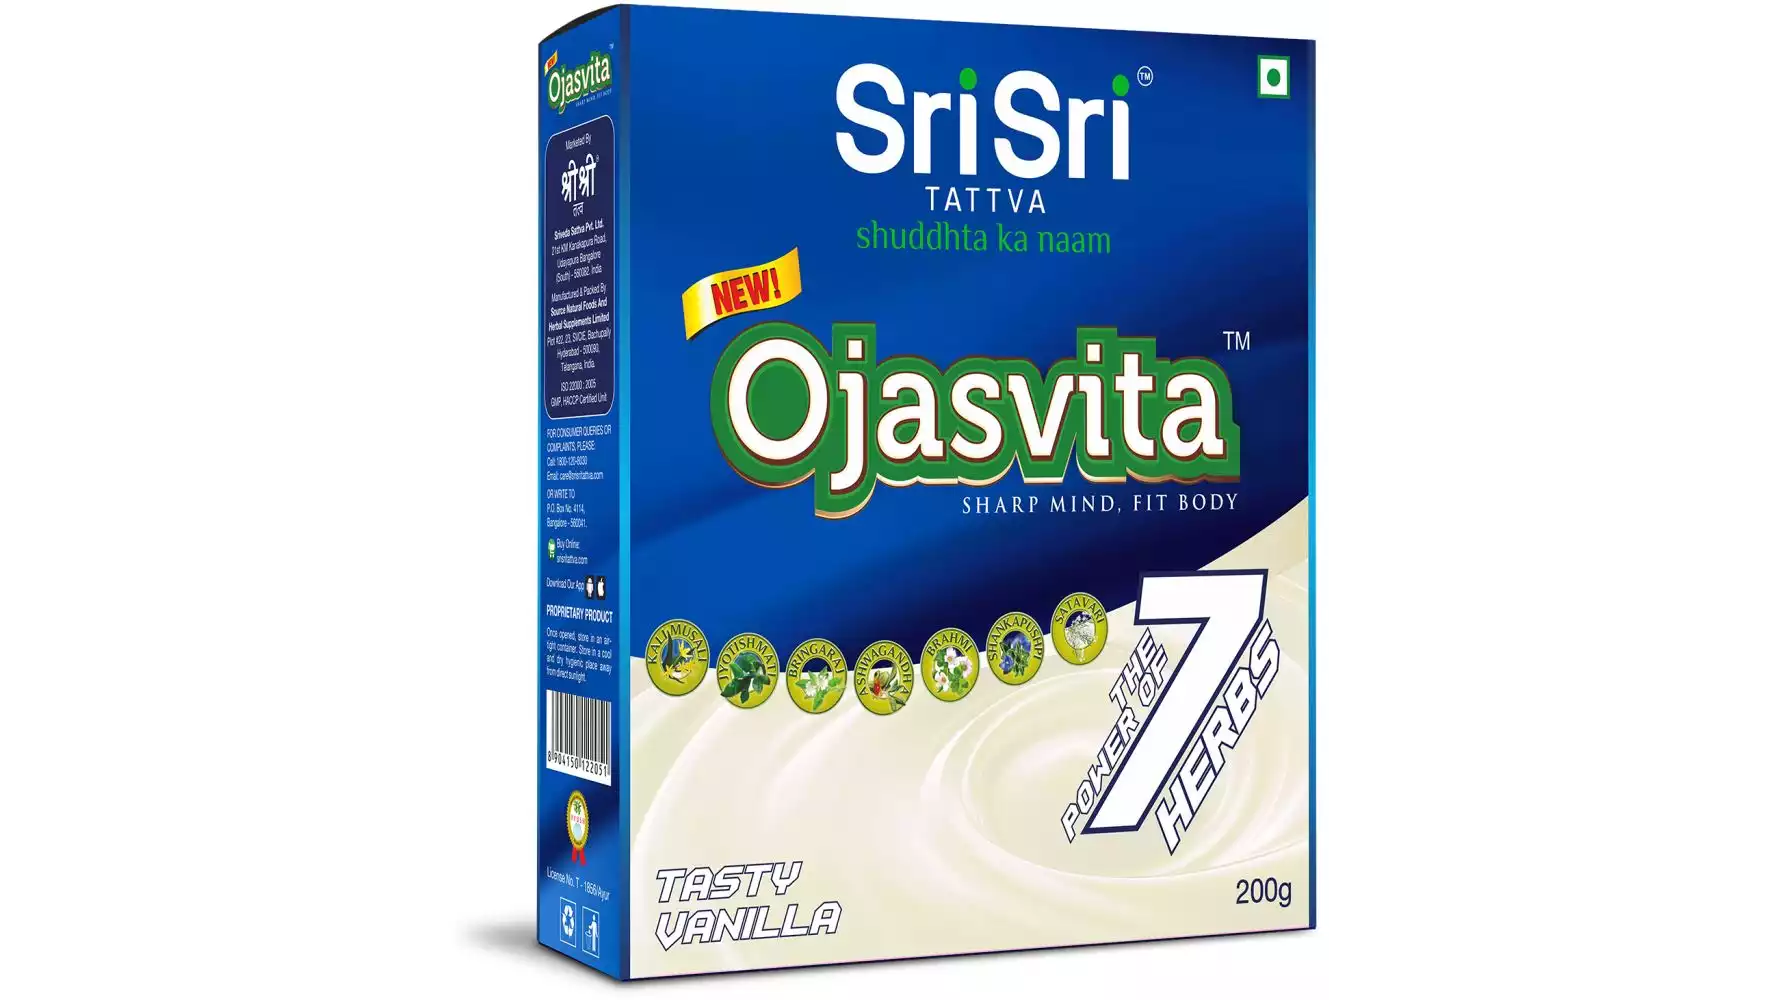 Sri Sri Tattva Ojasvita Vanilla Box Refill (200g)